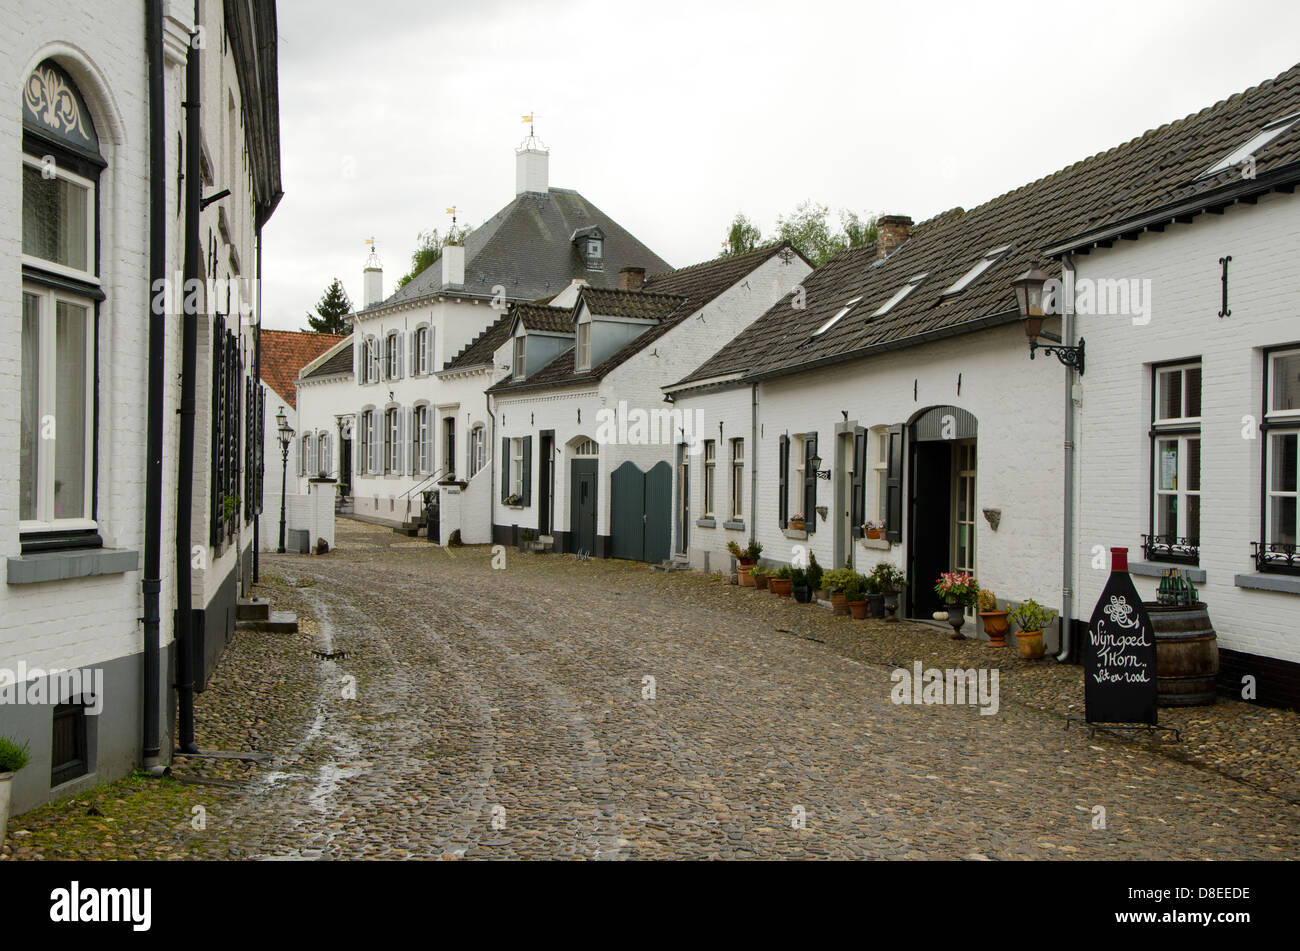 Weiß getünchten Backsteinhäuser in Beekstraat in Thorn, eine mittelalterliche Stadt in der niederländischen Provinz Limburg. Niederlande. Stockfoto